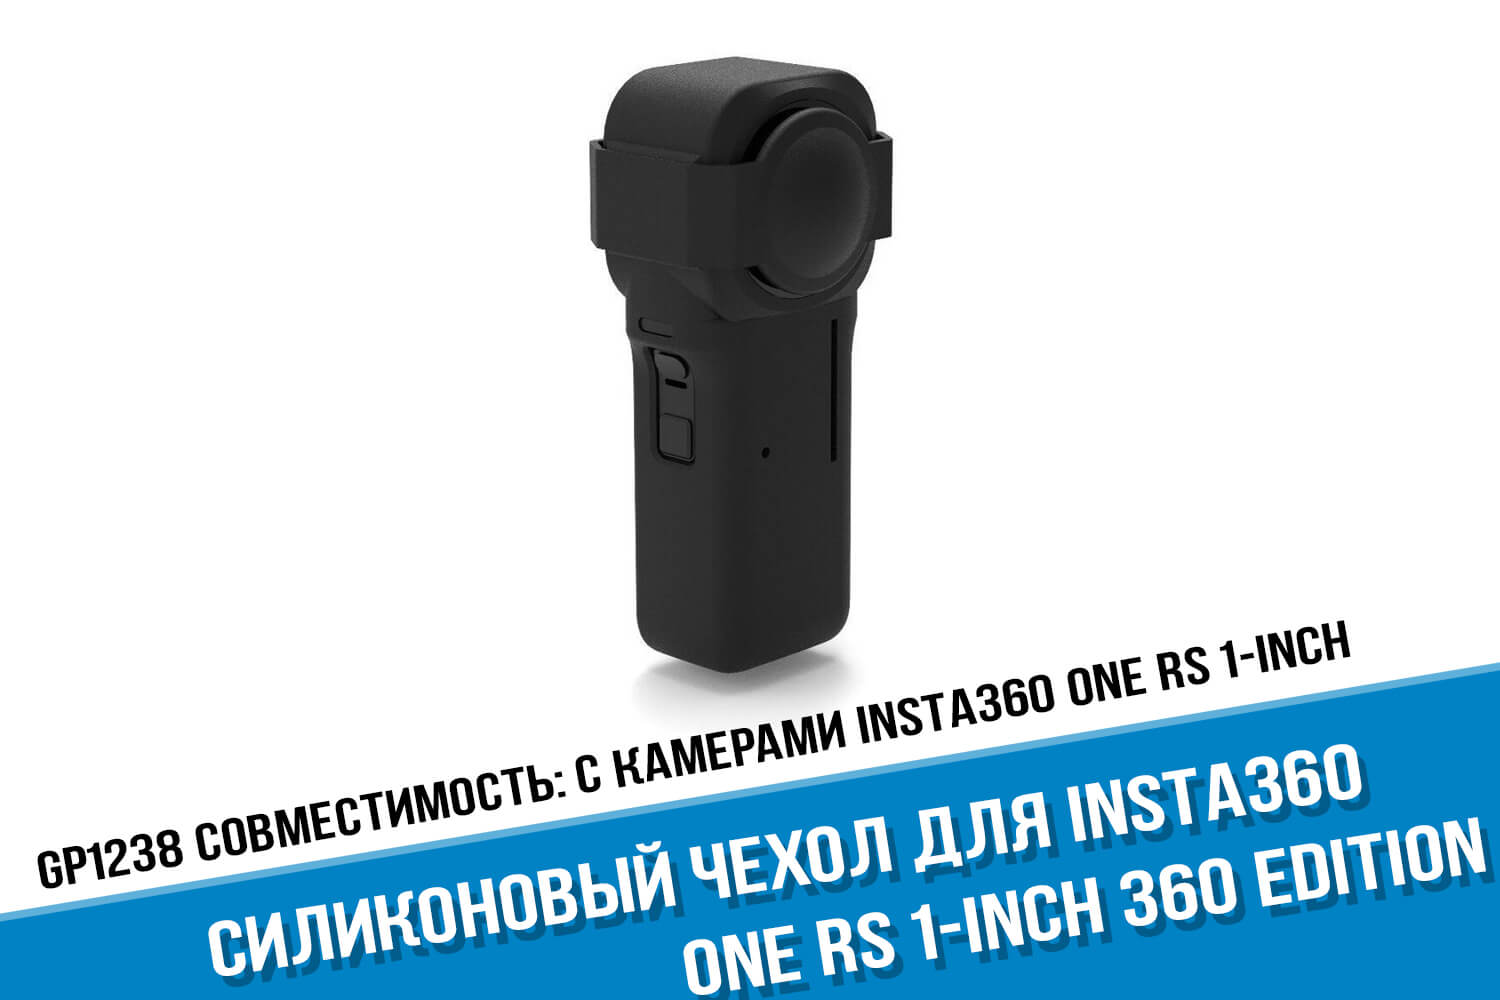 Черный силиконовый чехол для камеры Insta360 One RS 1-Inch Edition